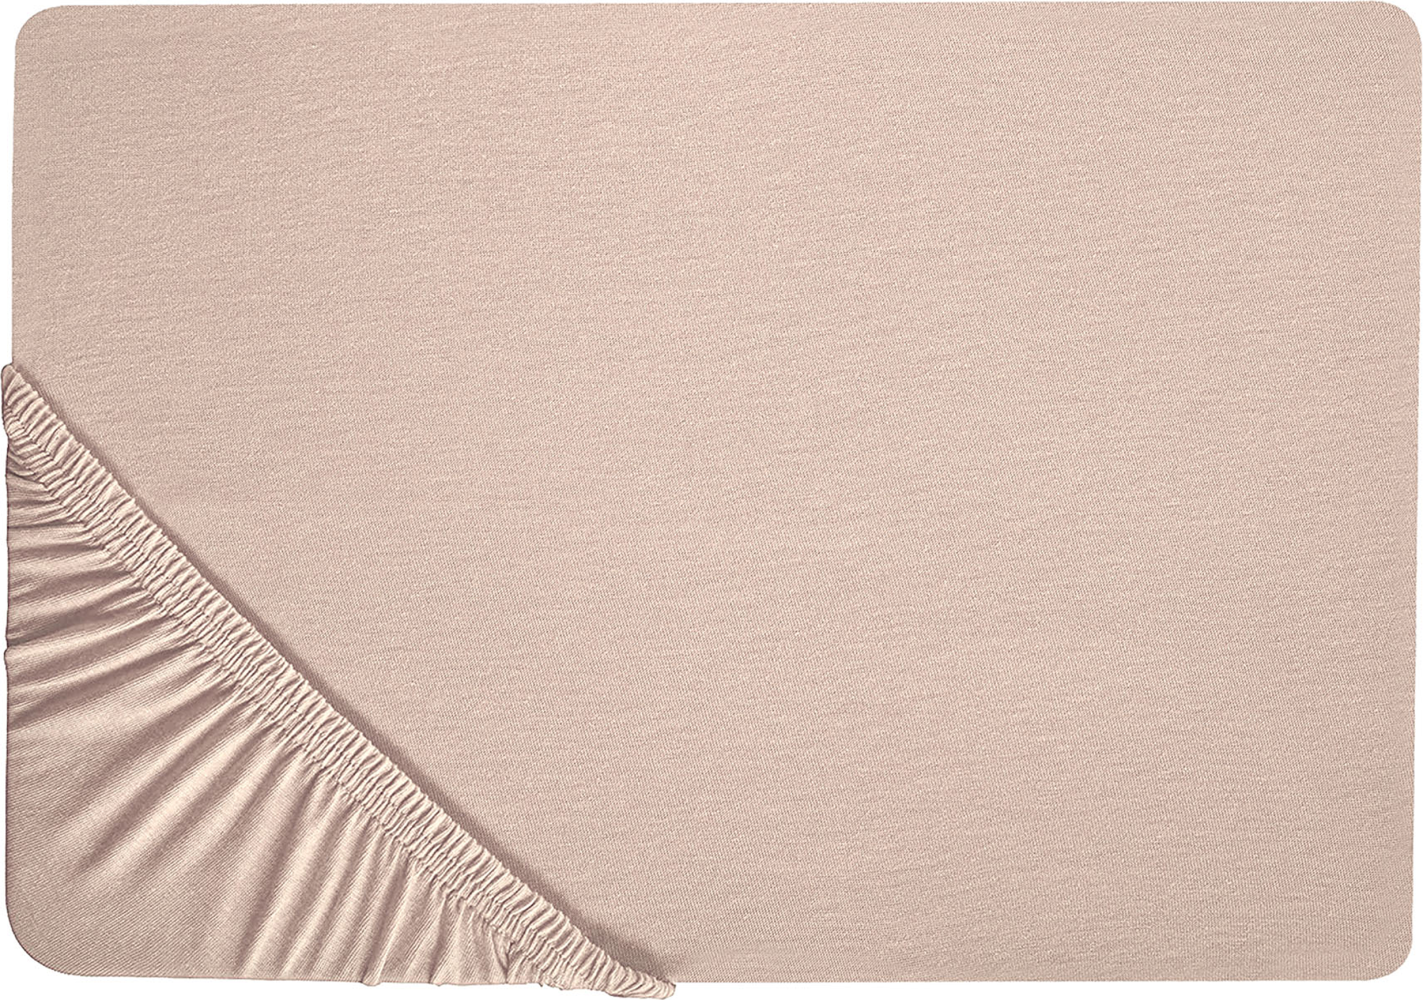 Spannbettlaken 'Hofuf' Beige Baumwolle mit Gummizug 90 x 200 cm Betttuch für Klassische Hohe Matratze Atmungsaktiv Schlafzimmer Bild 1